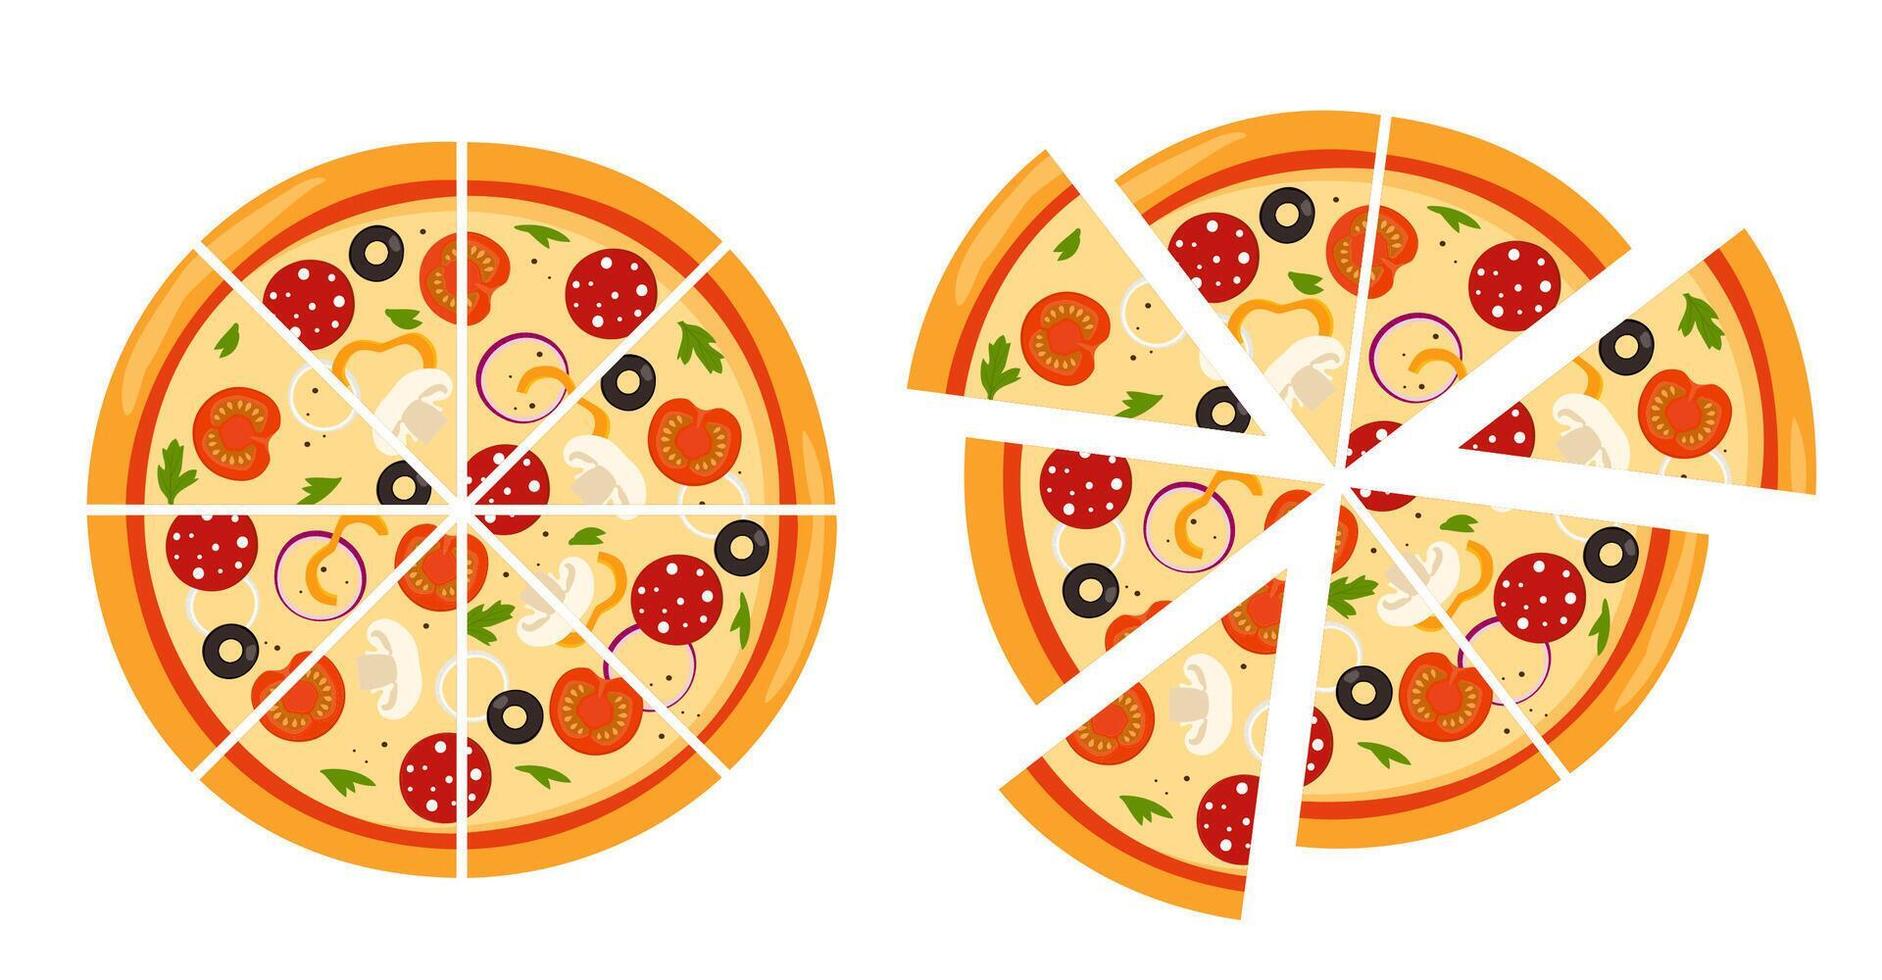 färsk runda pizza skära in i triangel- bitar. pizza med tomat, ost, oliv, korv, lök, basilika. traditionell italiensk snabb mat. topp se måltid. vektor illustration.